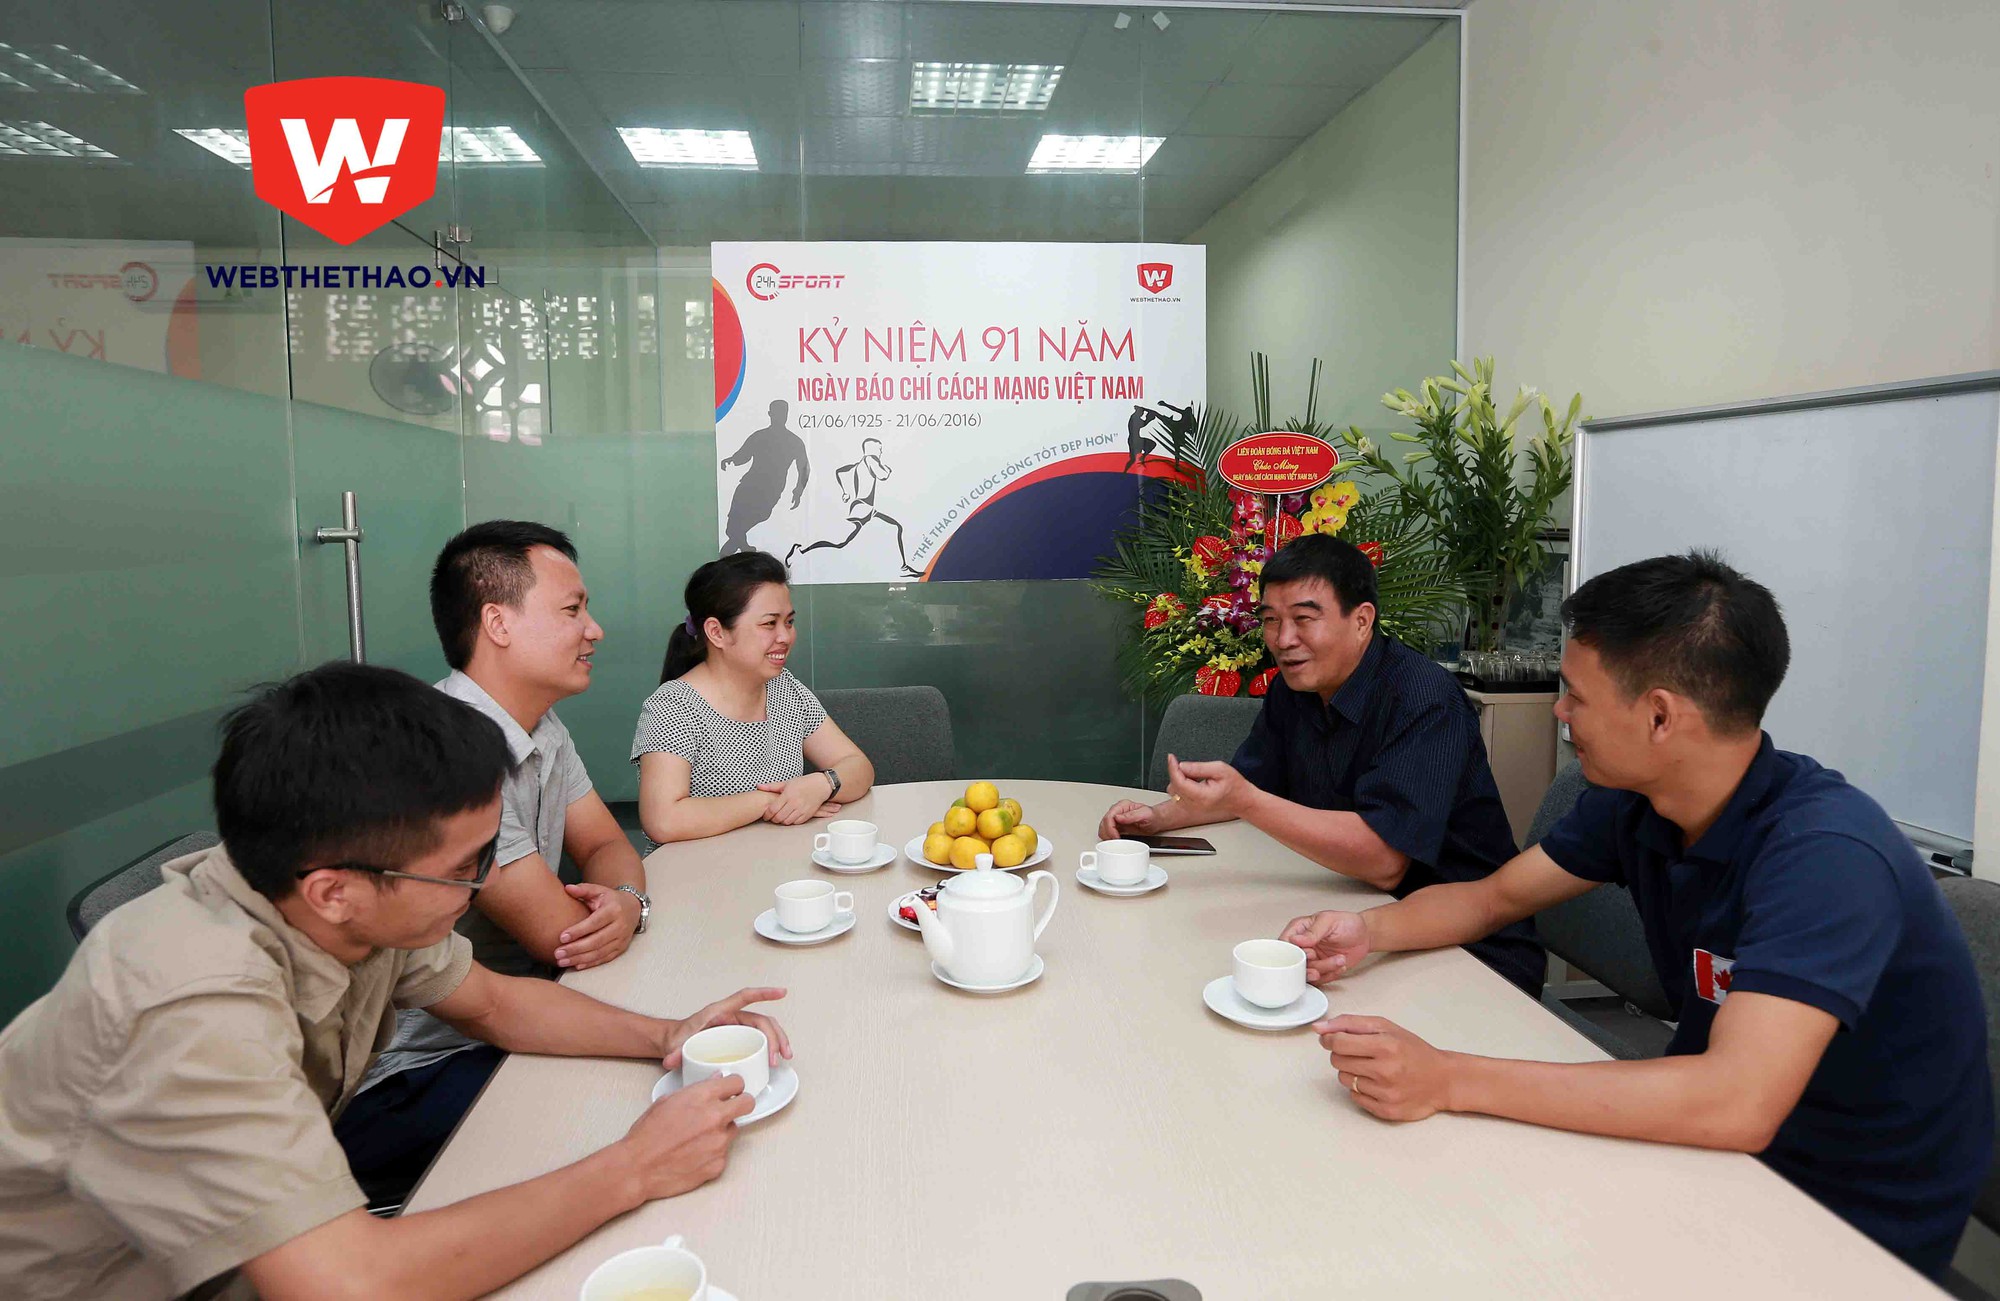 Lãnh đạo VFF trò chuyện thân mật tại buổi gặp mặt chúc mừng webthethao.vn nhân ngày 21/6. Ảnh: Hải Đăng.